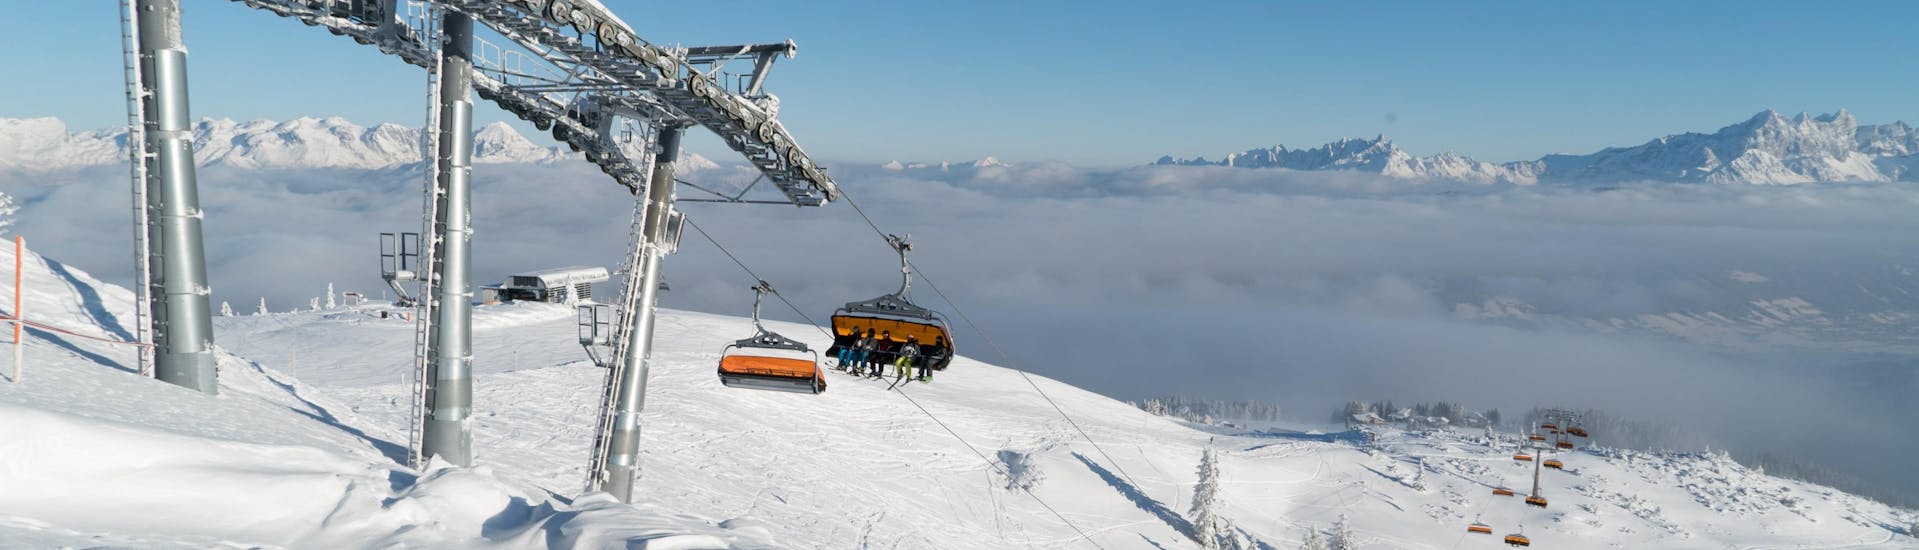 Ein Skilift im Skigebiet von Wagrain in Österreich, wo man Skikurse buchen kann.